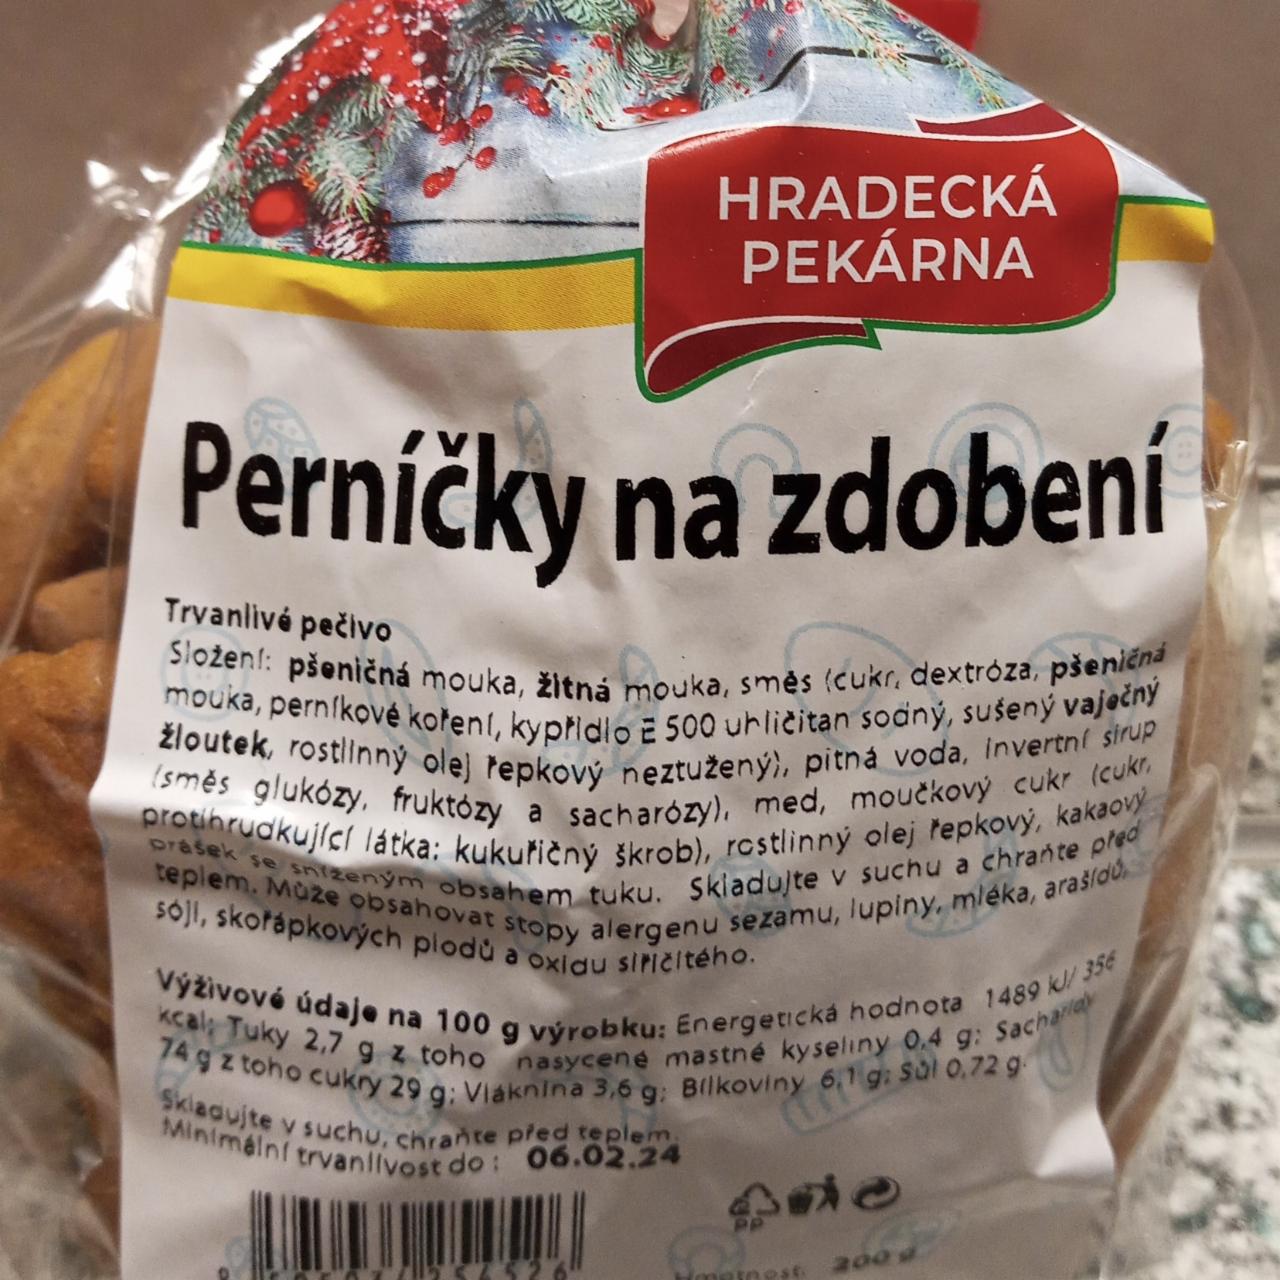 Fotografie - Perníčky na zdobení Hradecká pekárna